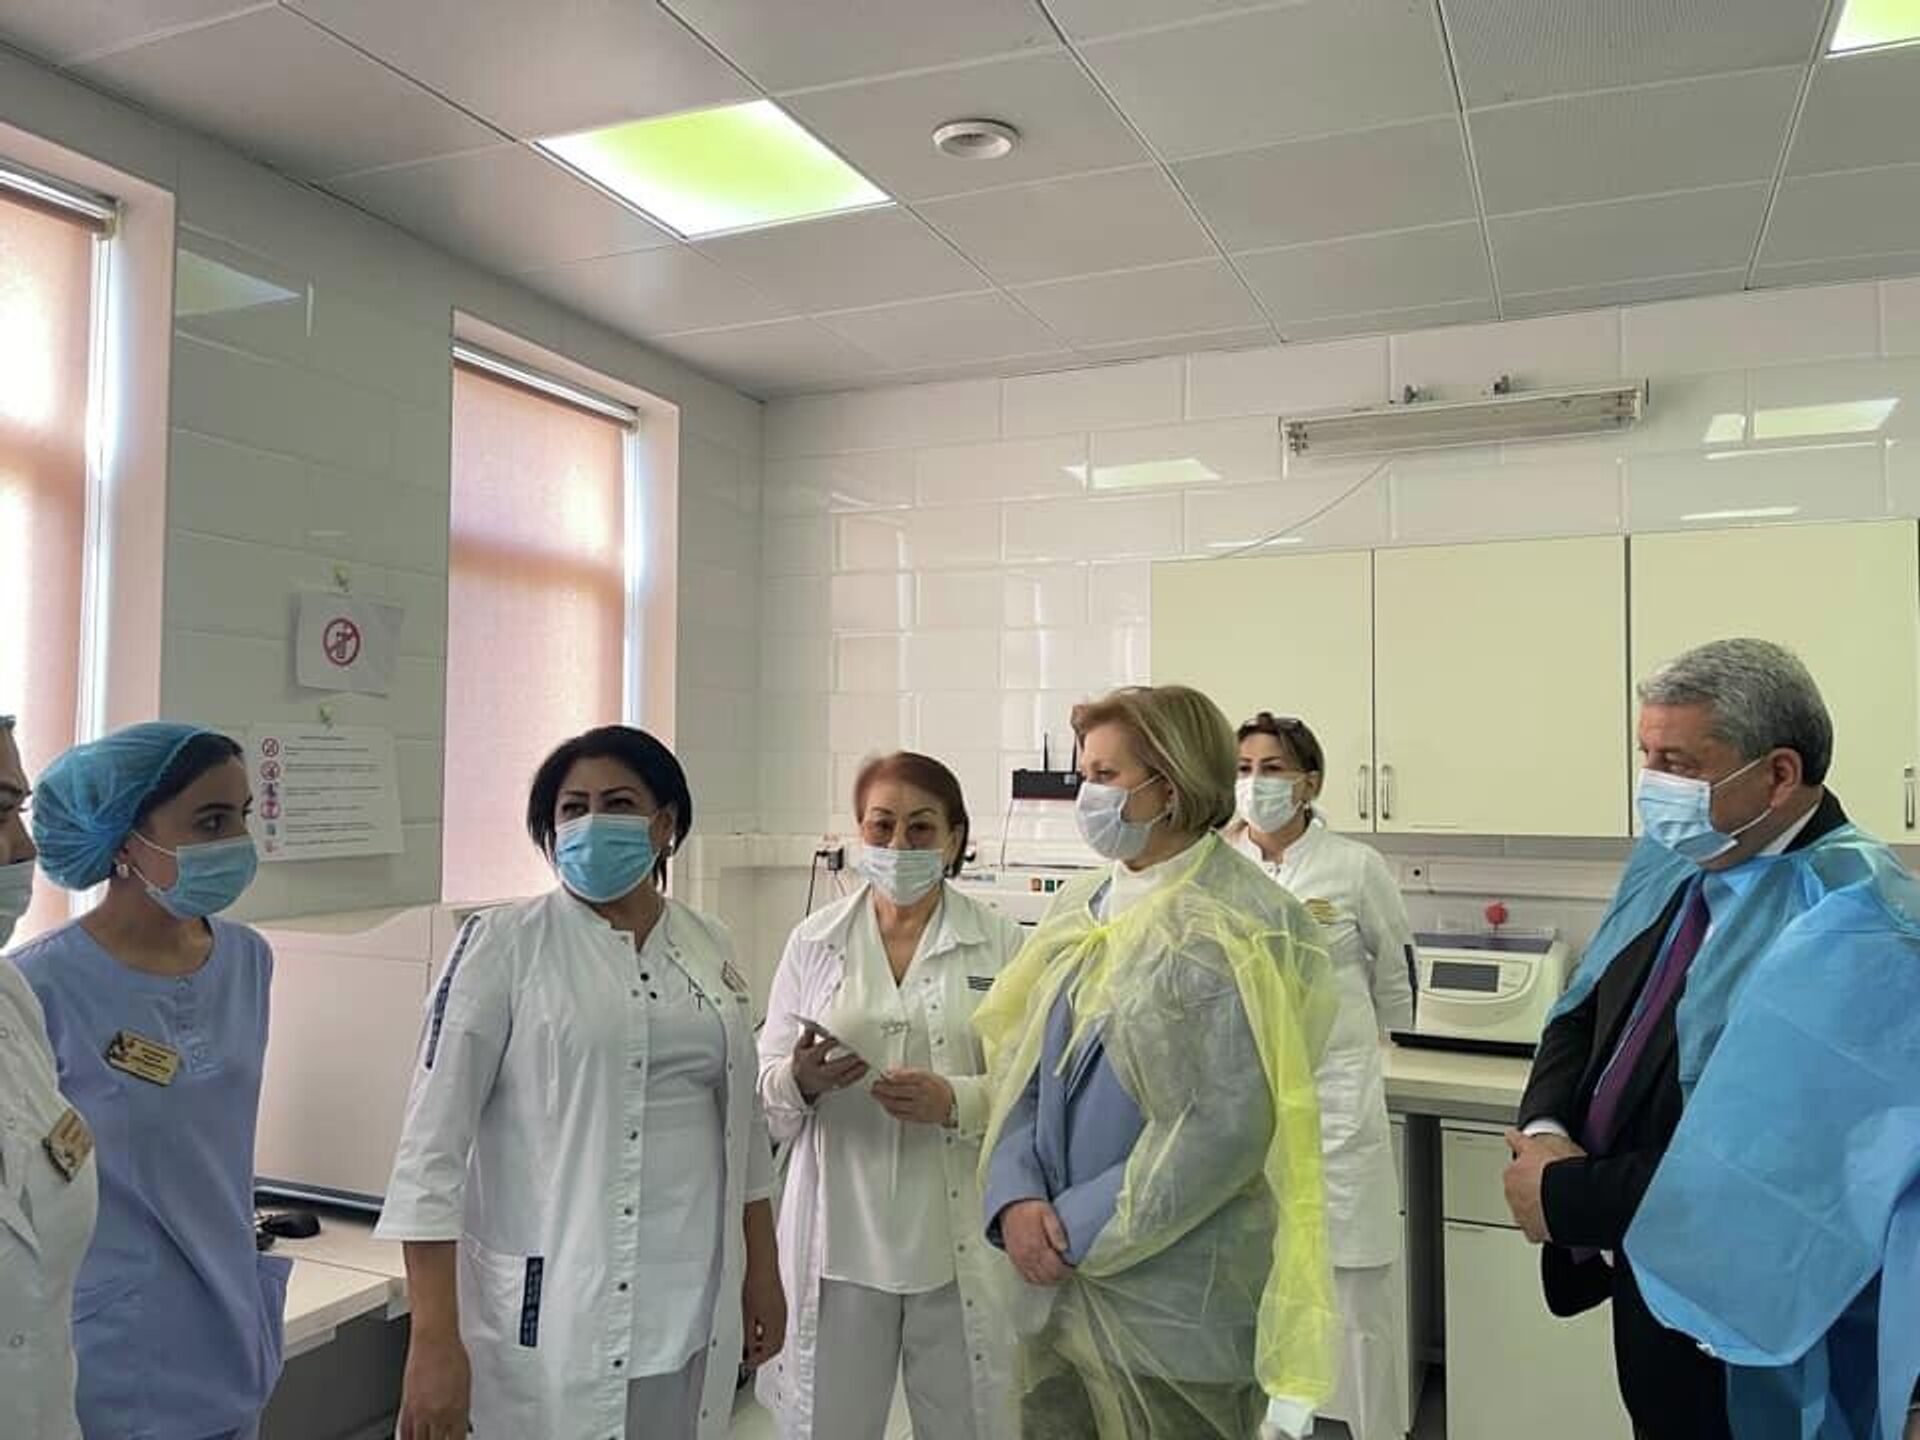 Глава Роспотребнадзора Анна Попова посетила лаборатории в Душанбе  - Sputnik Таджикистан, 1920, 18.12.2021